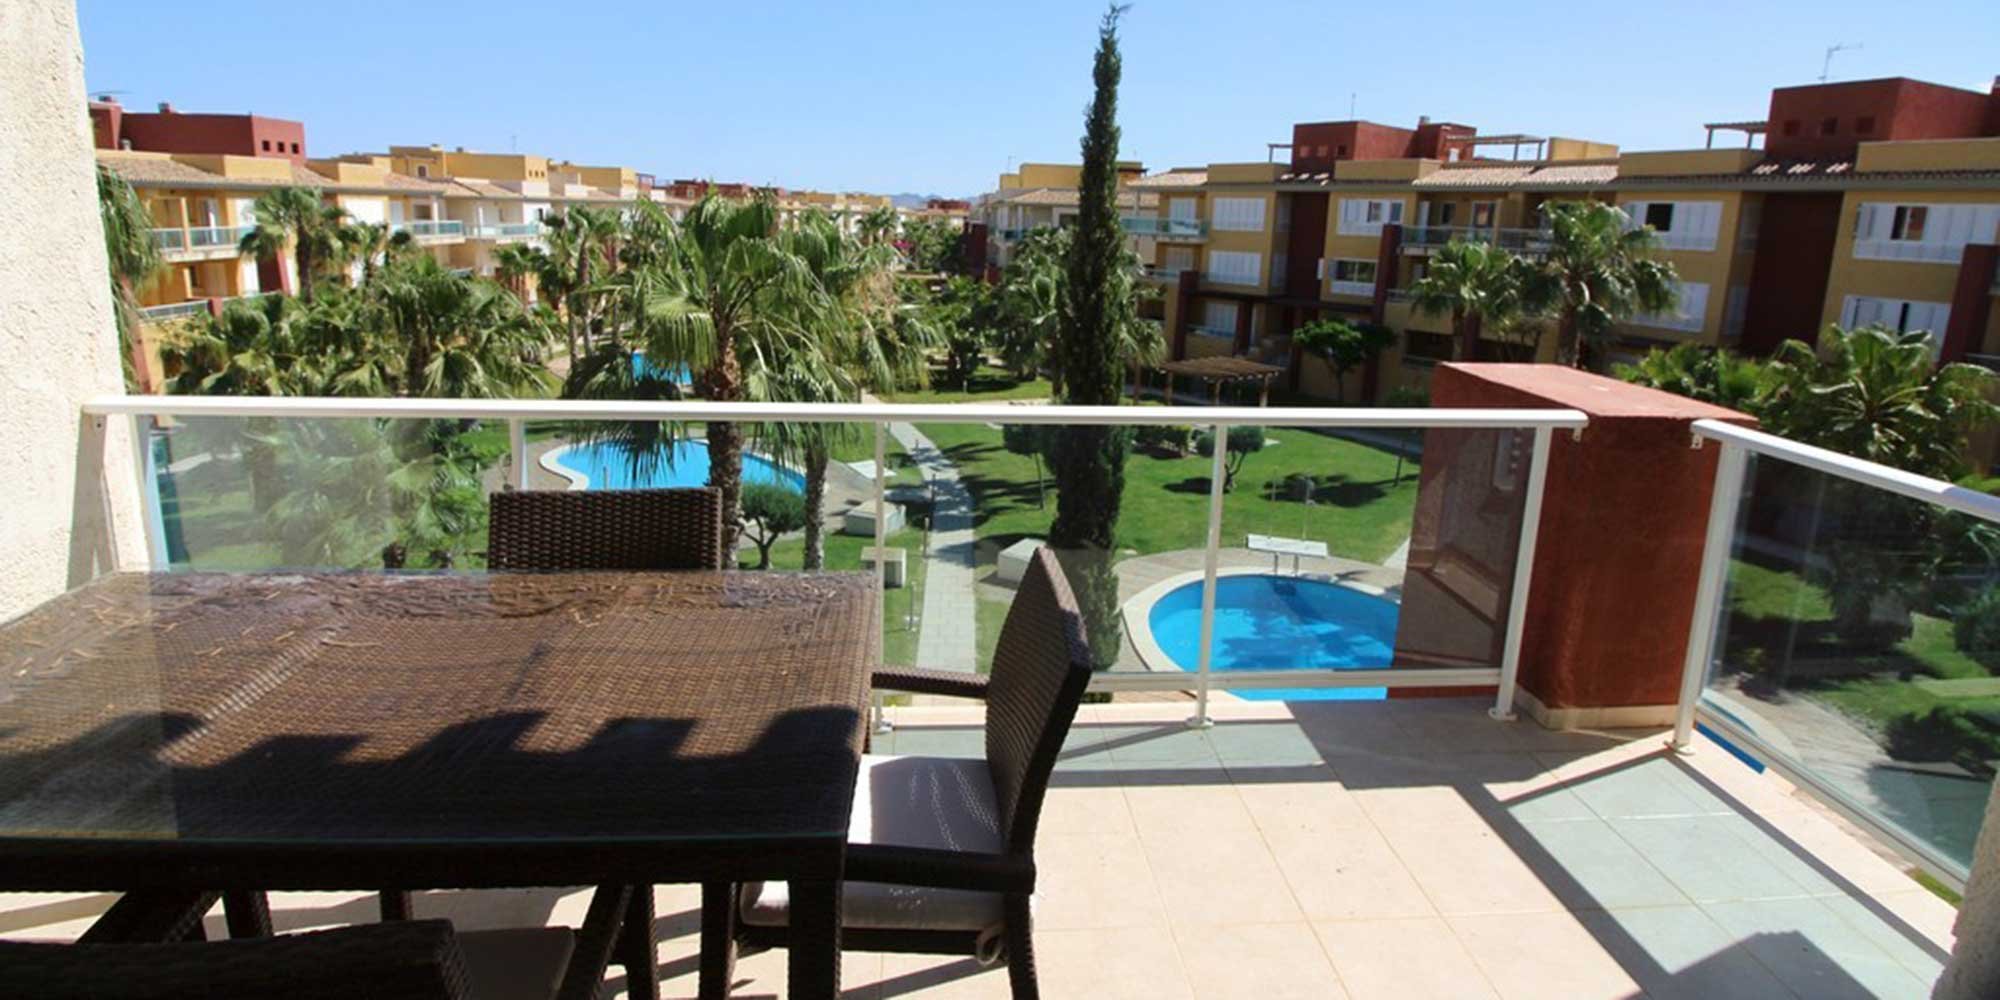 Los Olivos Hacienda del Álamo Hotel & Spa Golf Resort terraza piscina